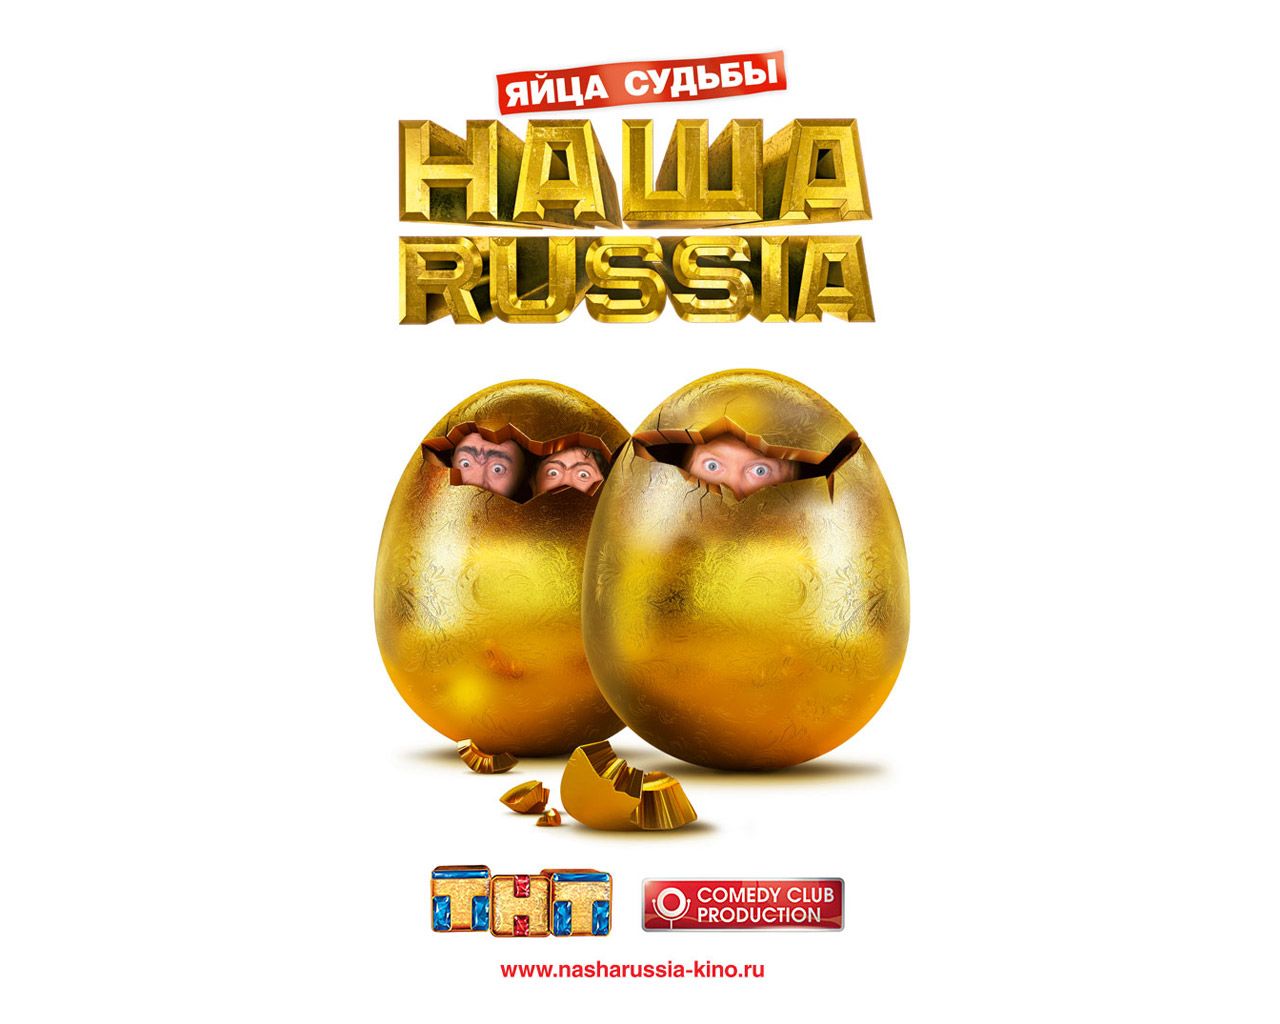 Наша Russia: Яйца судьбы обои для рабочего стола